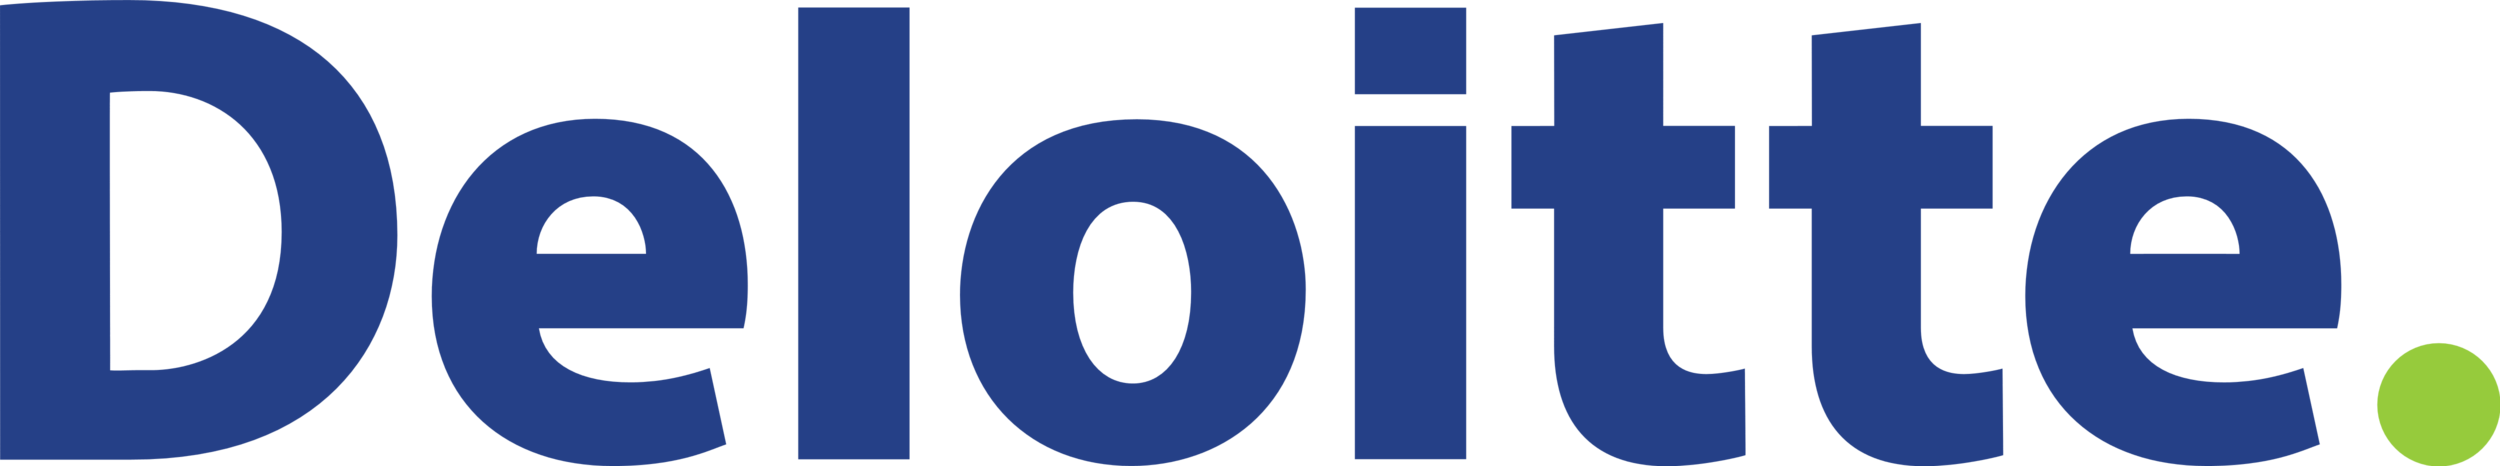 Deloitte_logo.png